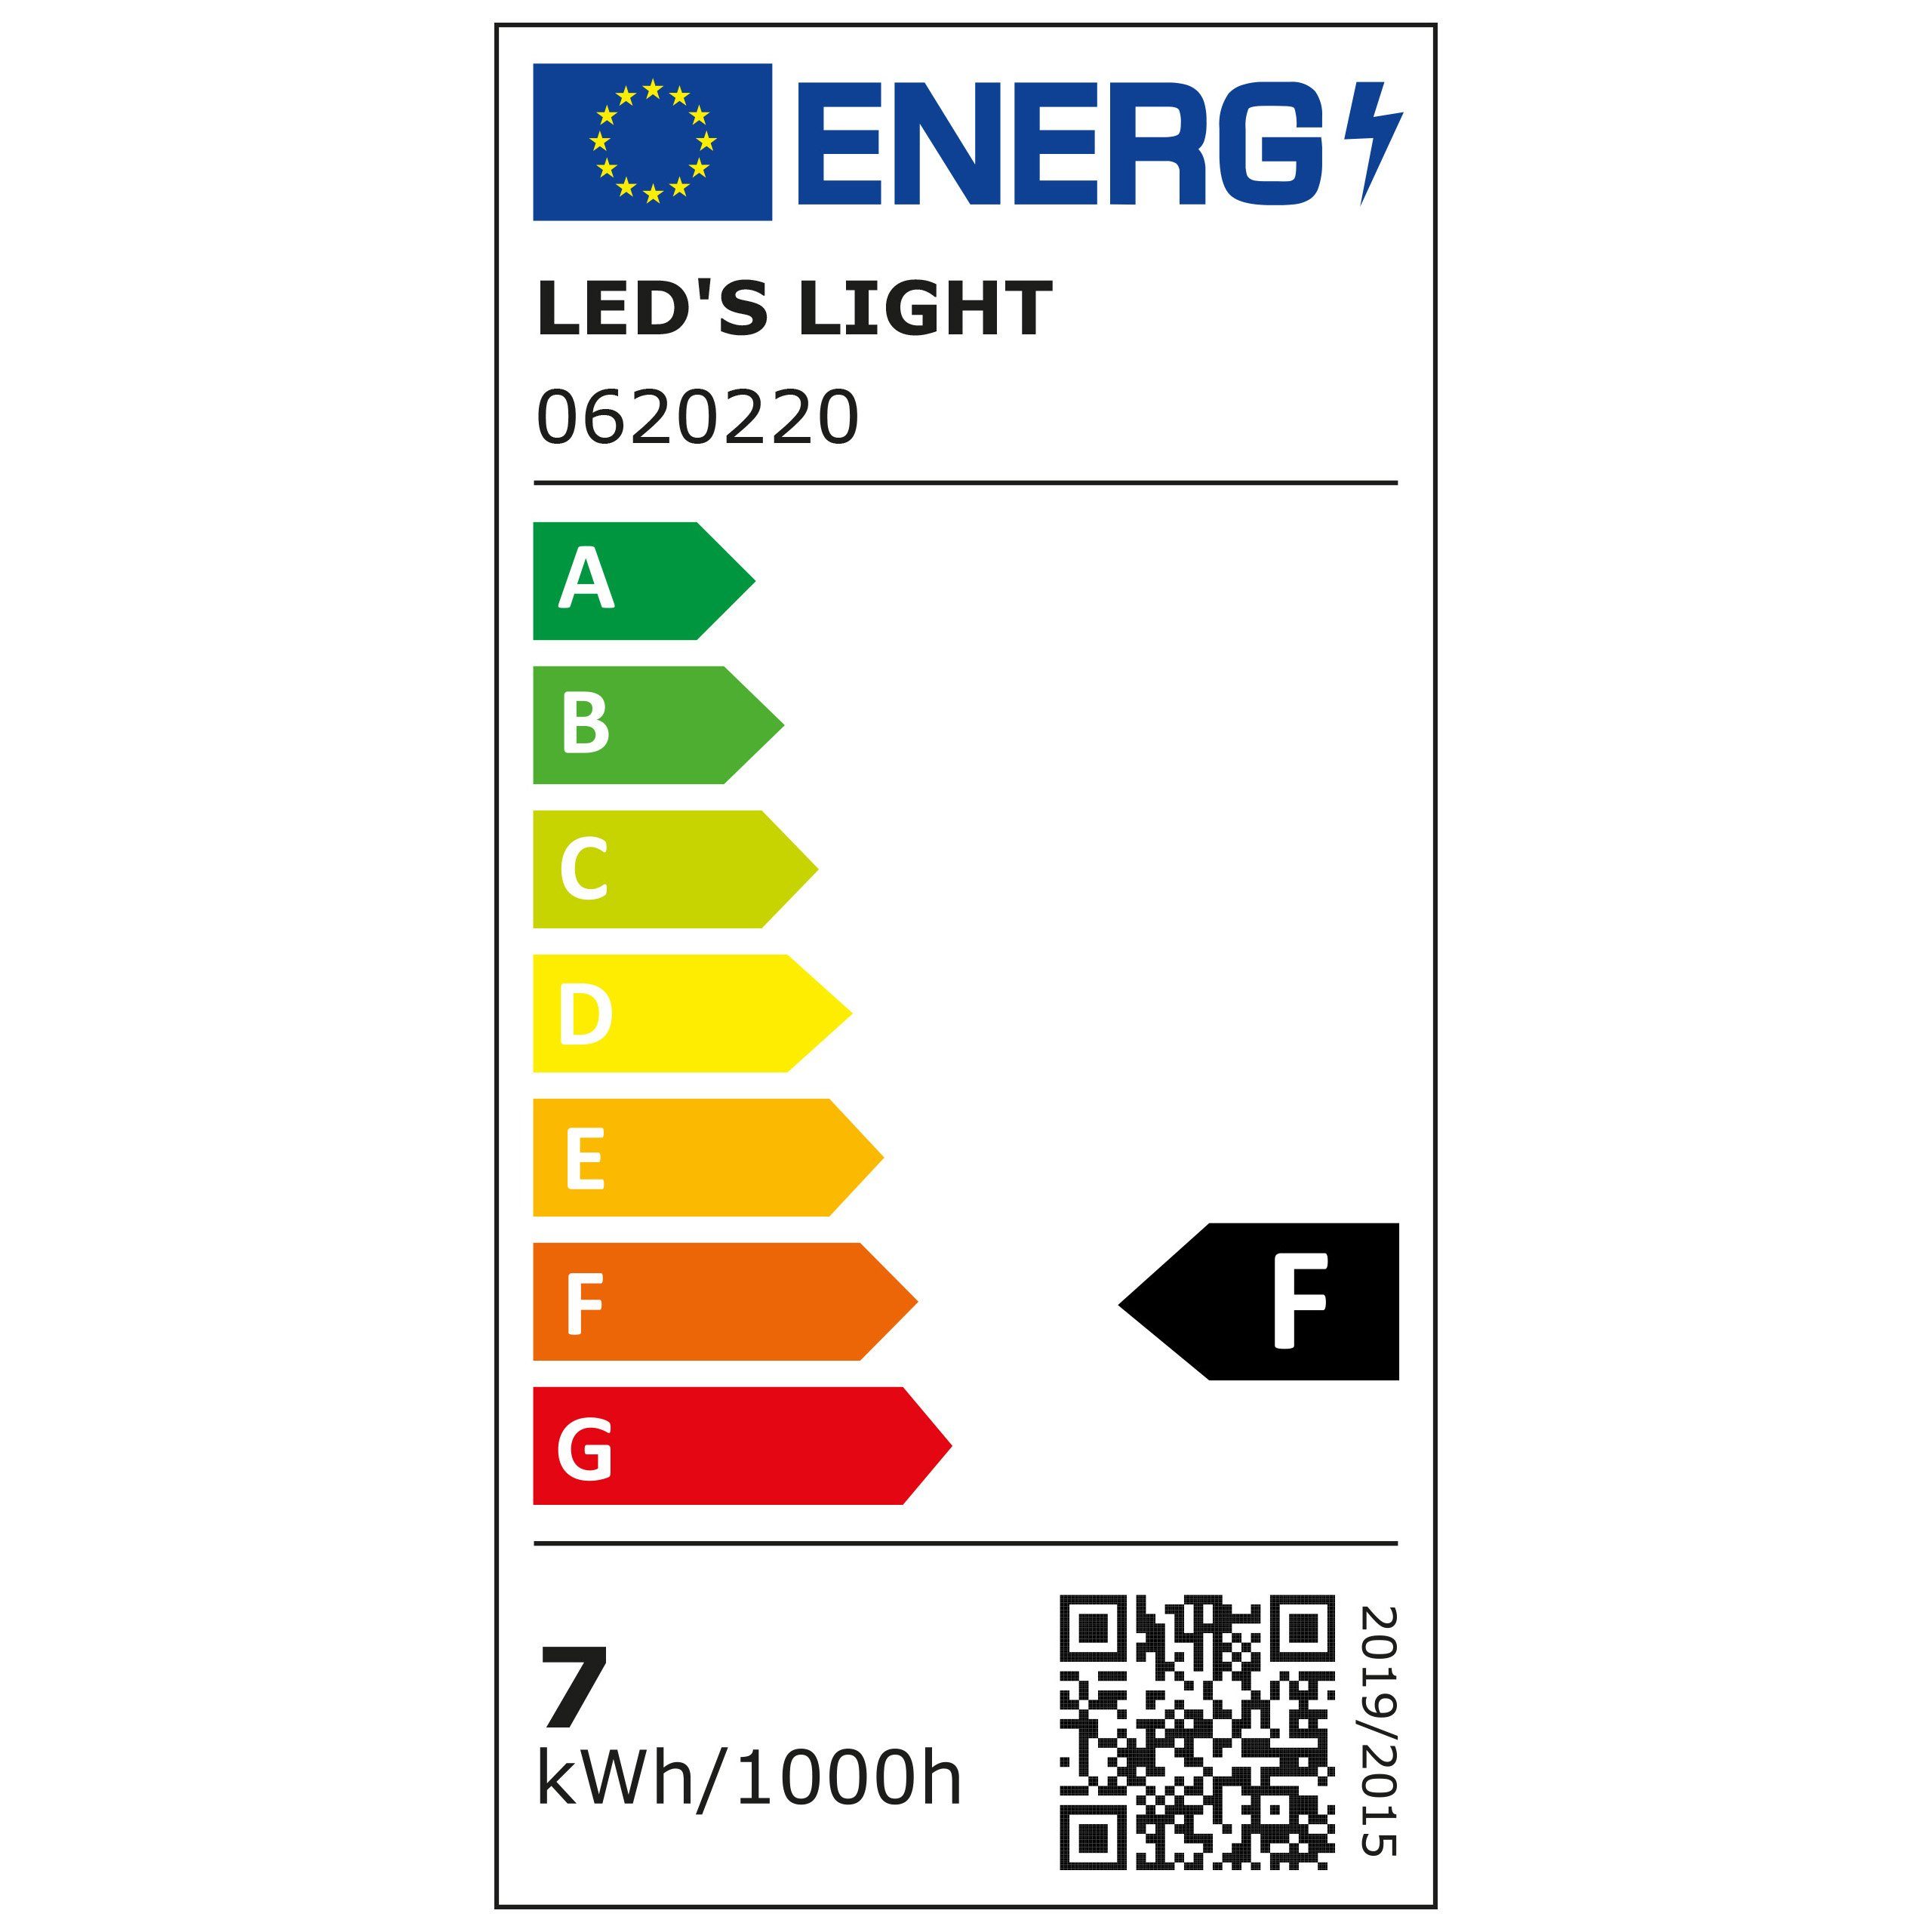 LED's LED-Leuchtmittel GX53 Matt light 0620220 dimmbar warmweiß Spot, LED GX53, 6,5W